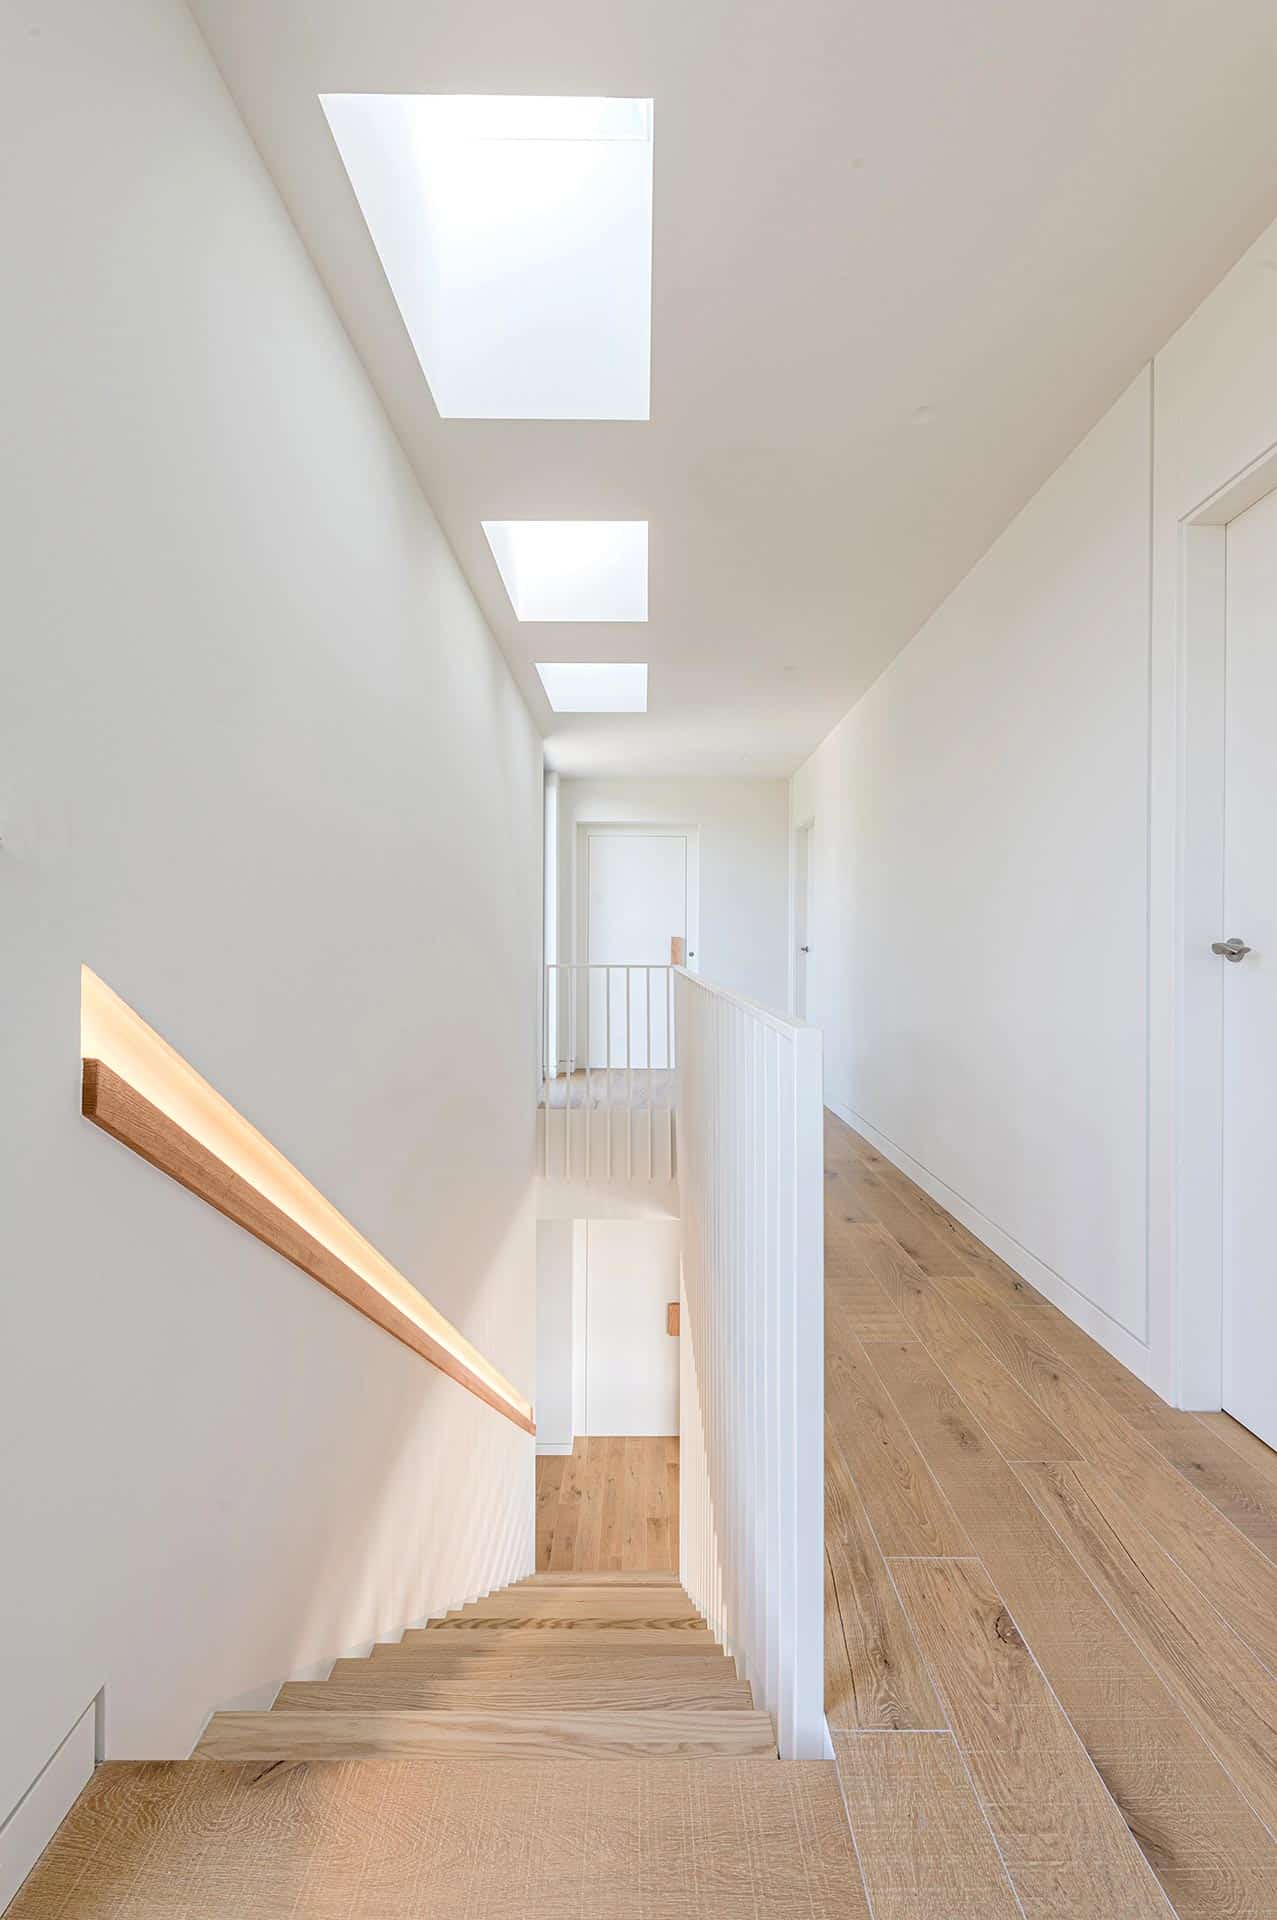 Escalera de madera con luz cenital en vivienda unifamiliar diseñada por Moah Arquitectos en Loredo